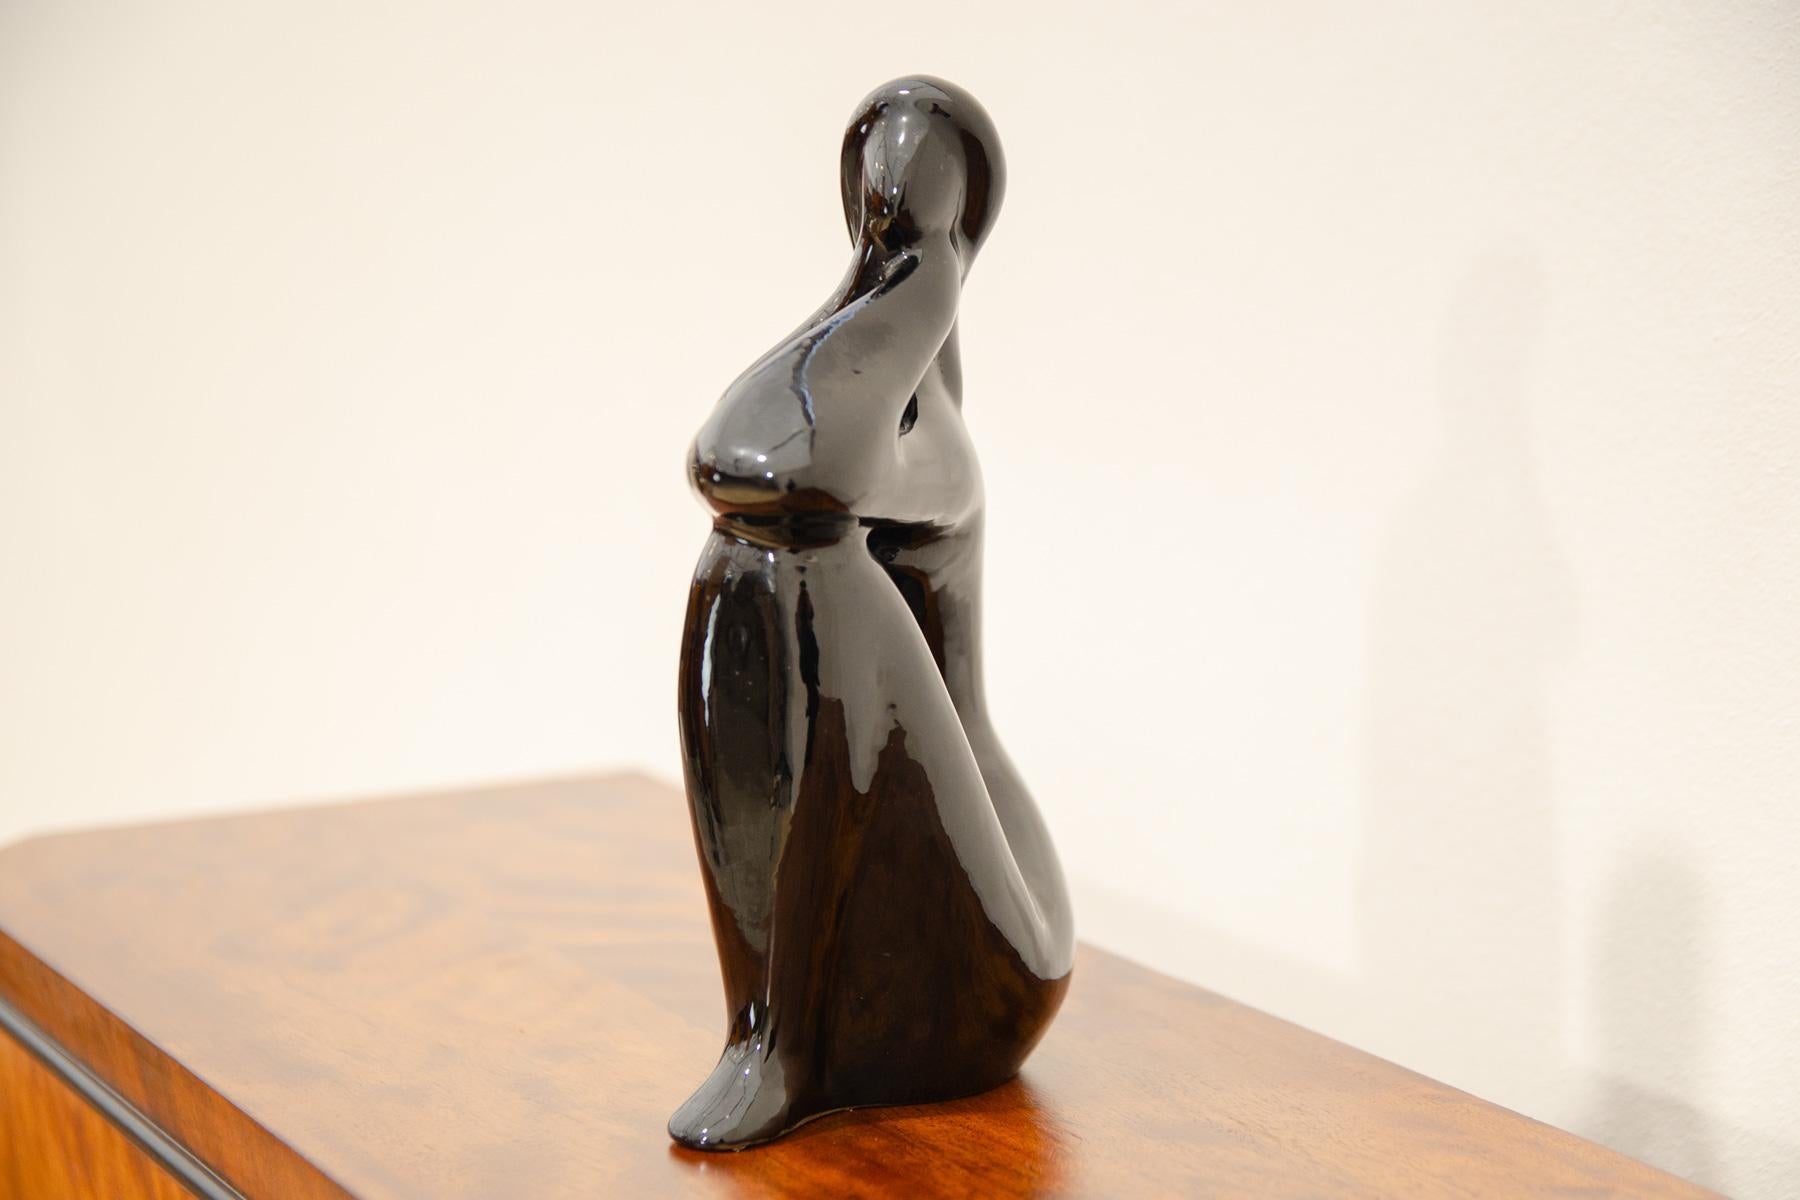 Sculpture en céramique d'une fille nue conçue par l'artiste tchécoslovaque Jitka Forejtová. Fabriqué dans les années 1960. La sculpture est réalisée en céramique avec une glaçure noire.
Ce design minimaliste de la statuette correspond tout à fait à